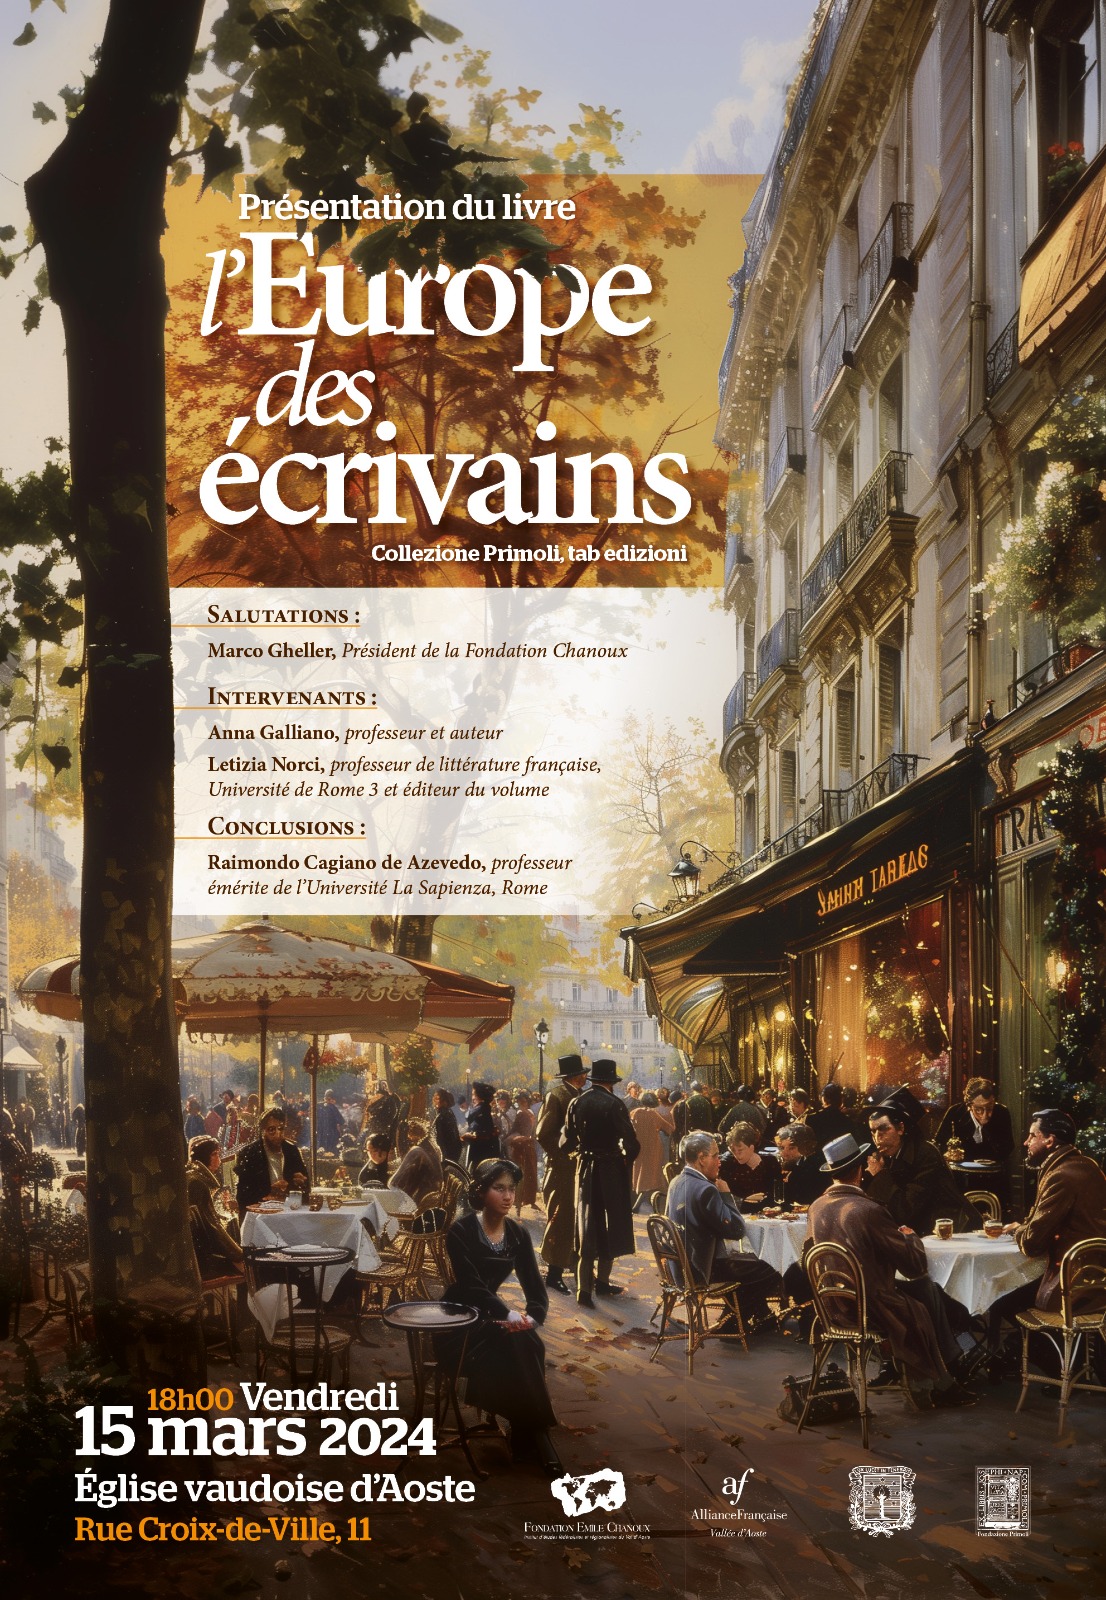 Presentazione del libro “L’Europe des écrivains”